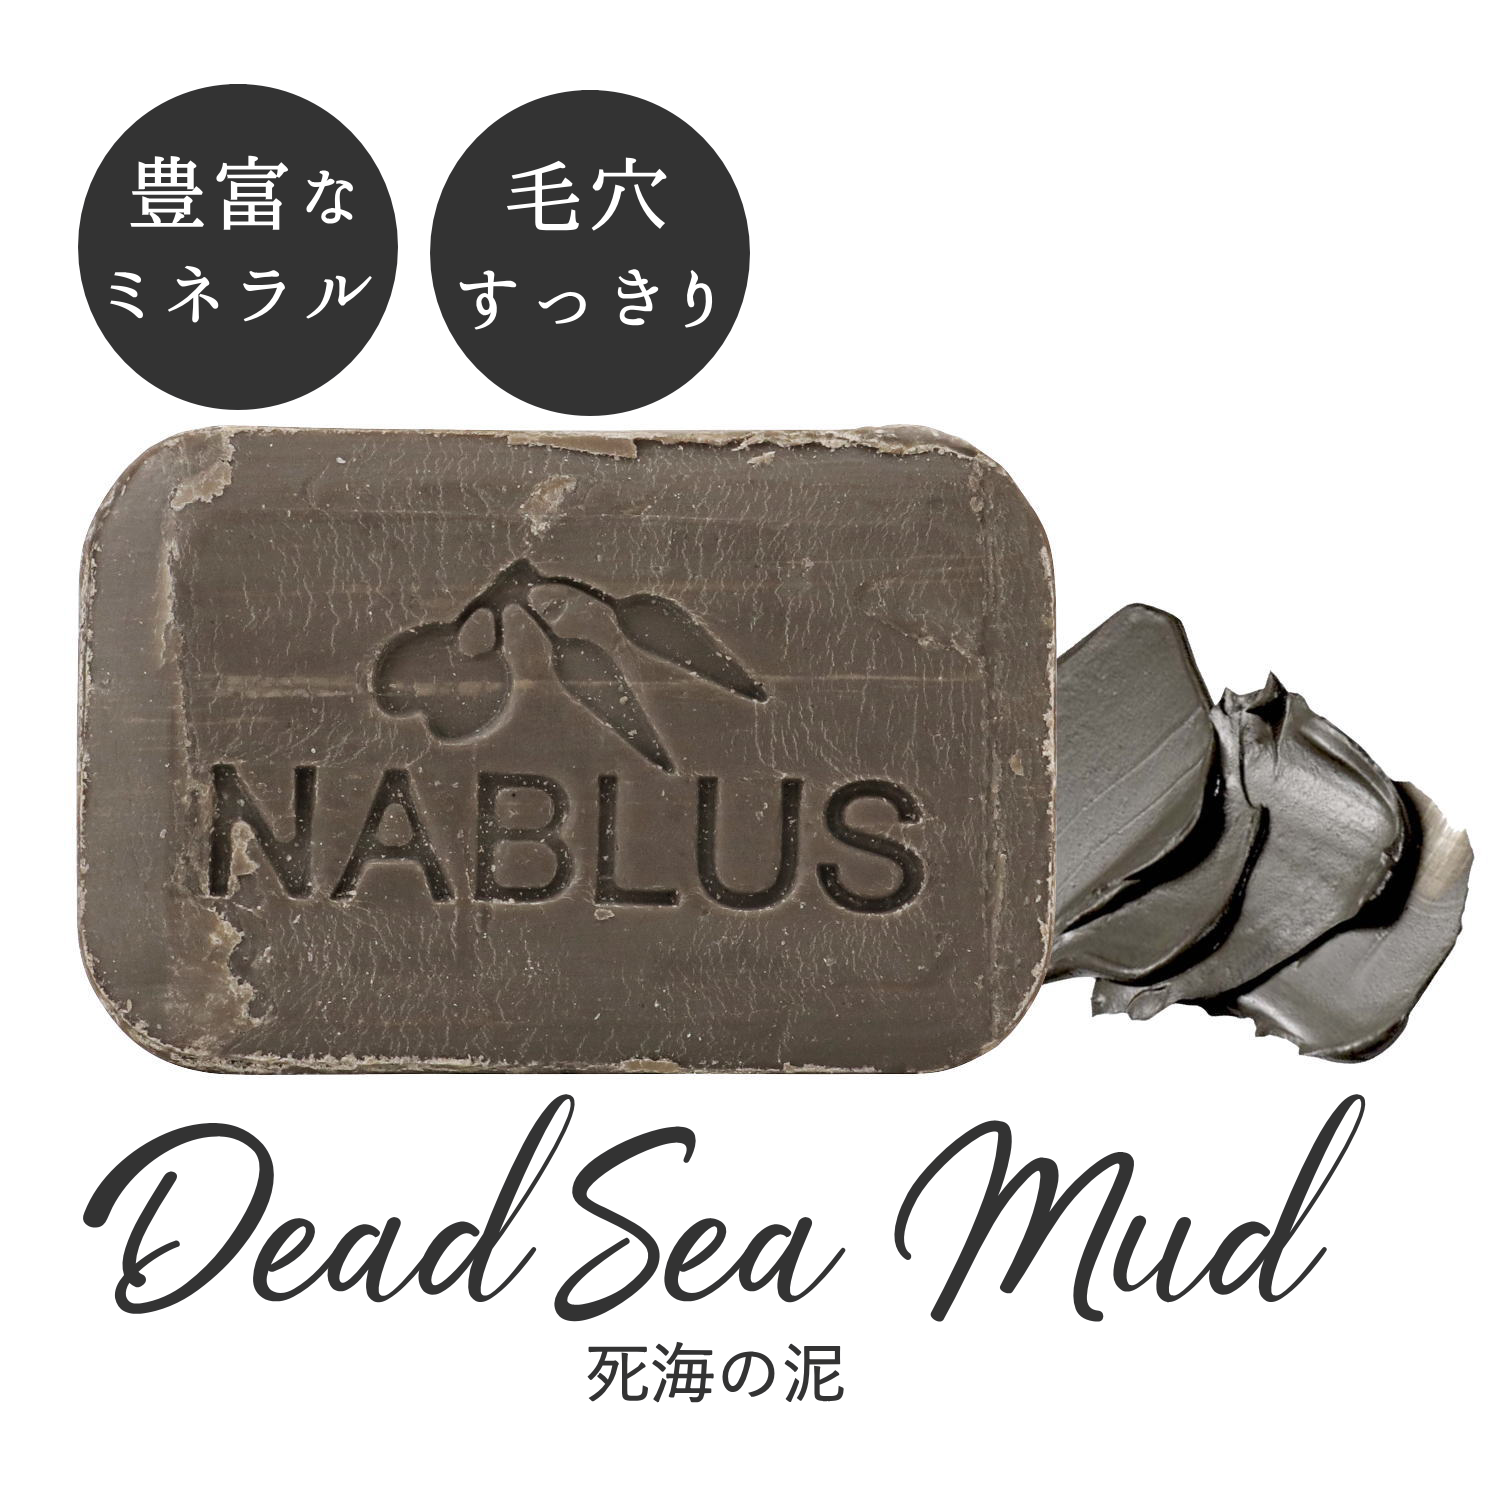 ナーブルスソープ NABLUS SOAP 死海の泥 Dead Sea Mud 豊富なミネラル・毛穴すっきり オーガニック石鹸